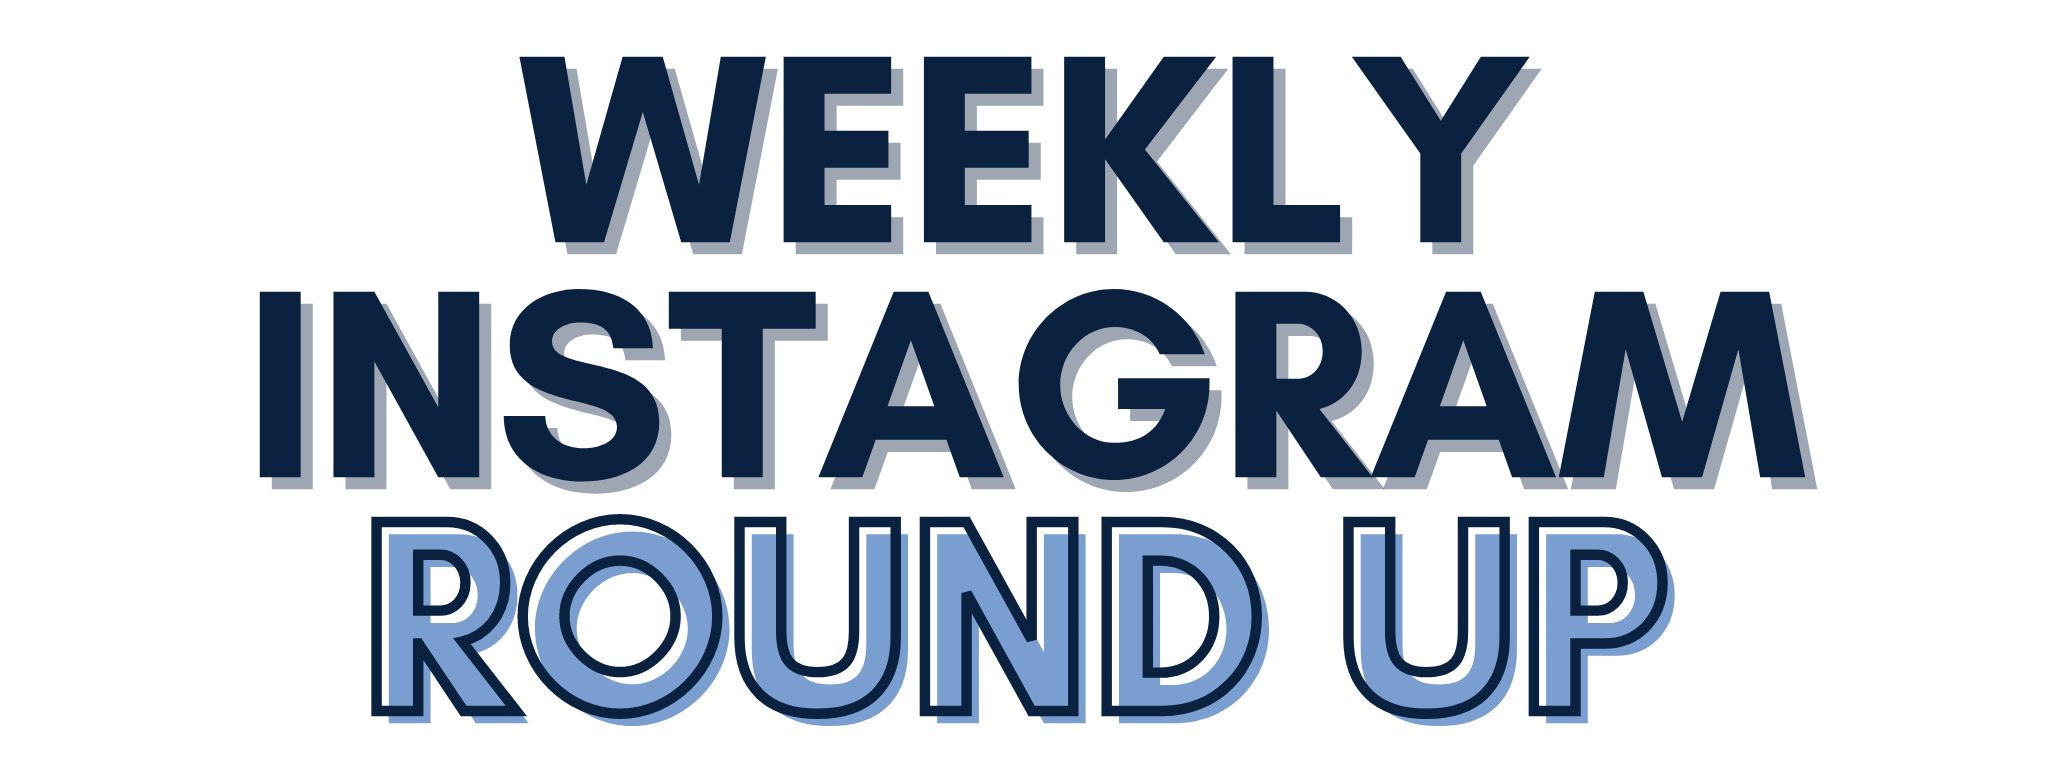 Weekly Instagram Round Up 8/1-8/7 2020